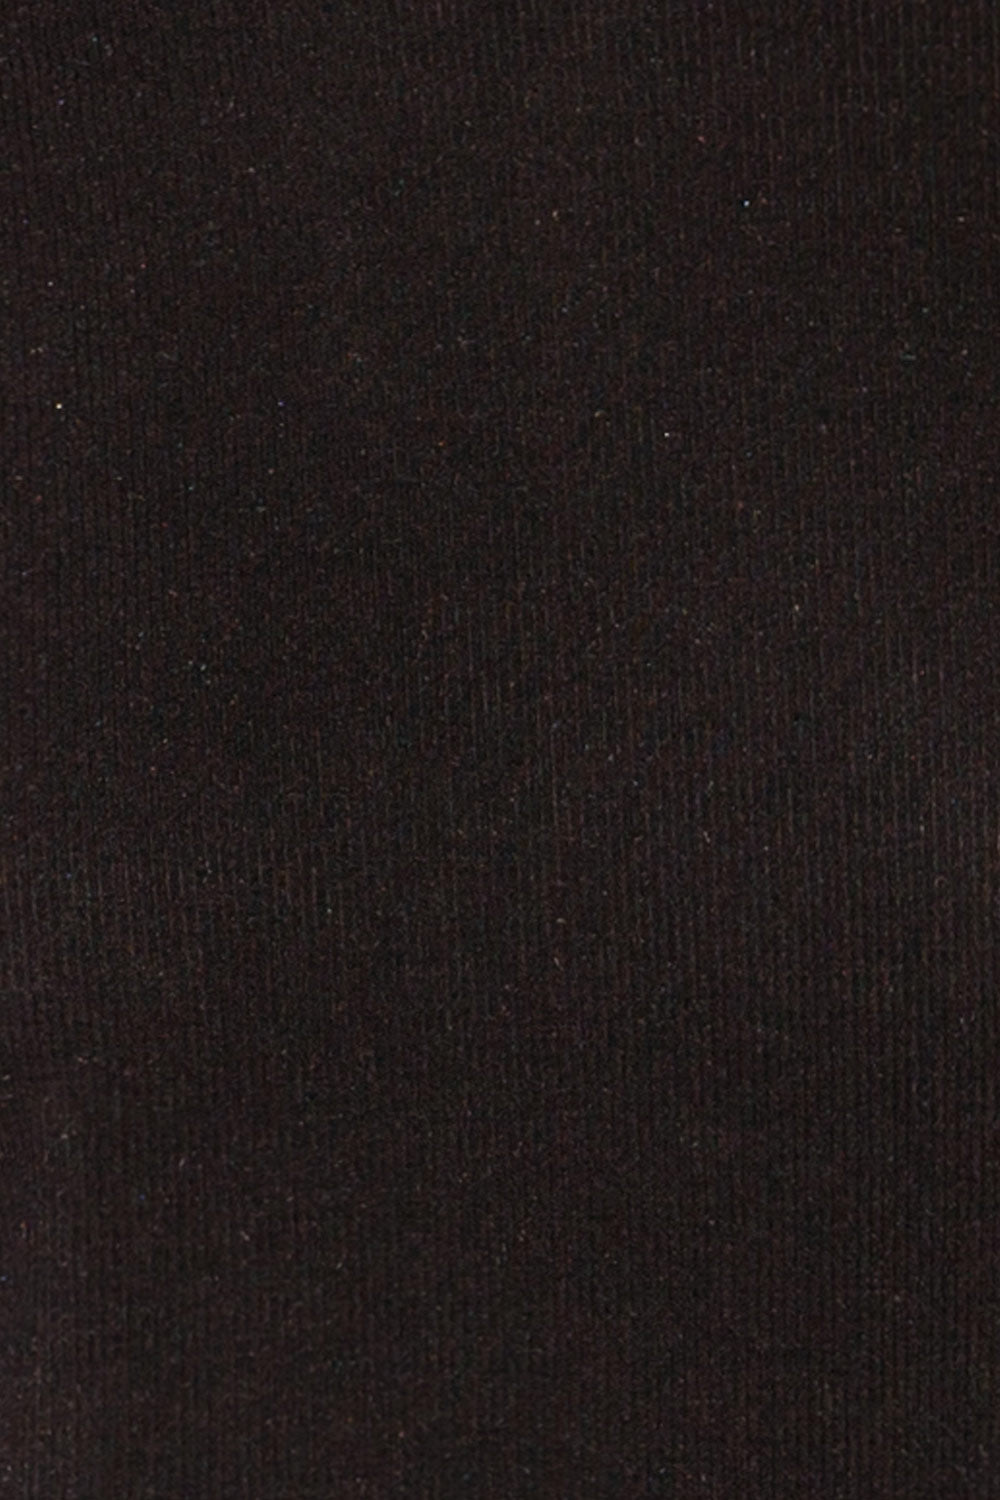 Coek Black Long Sleeve Top | La petite garçonne fabric 